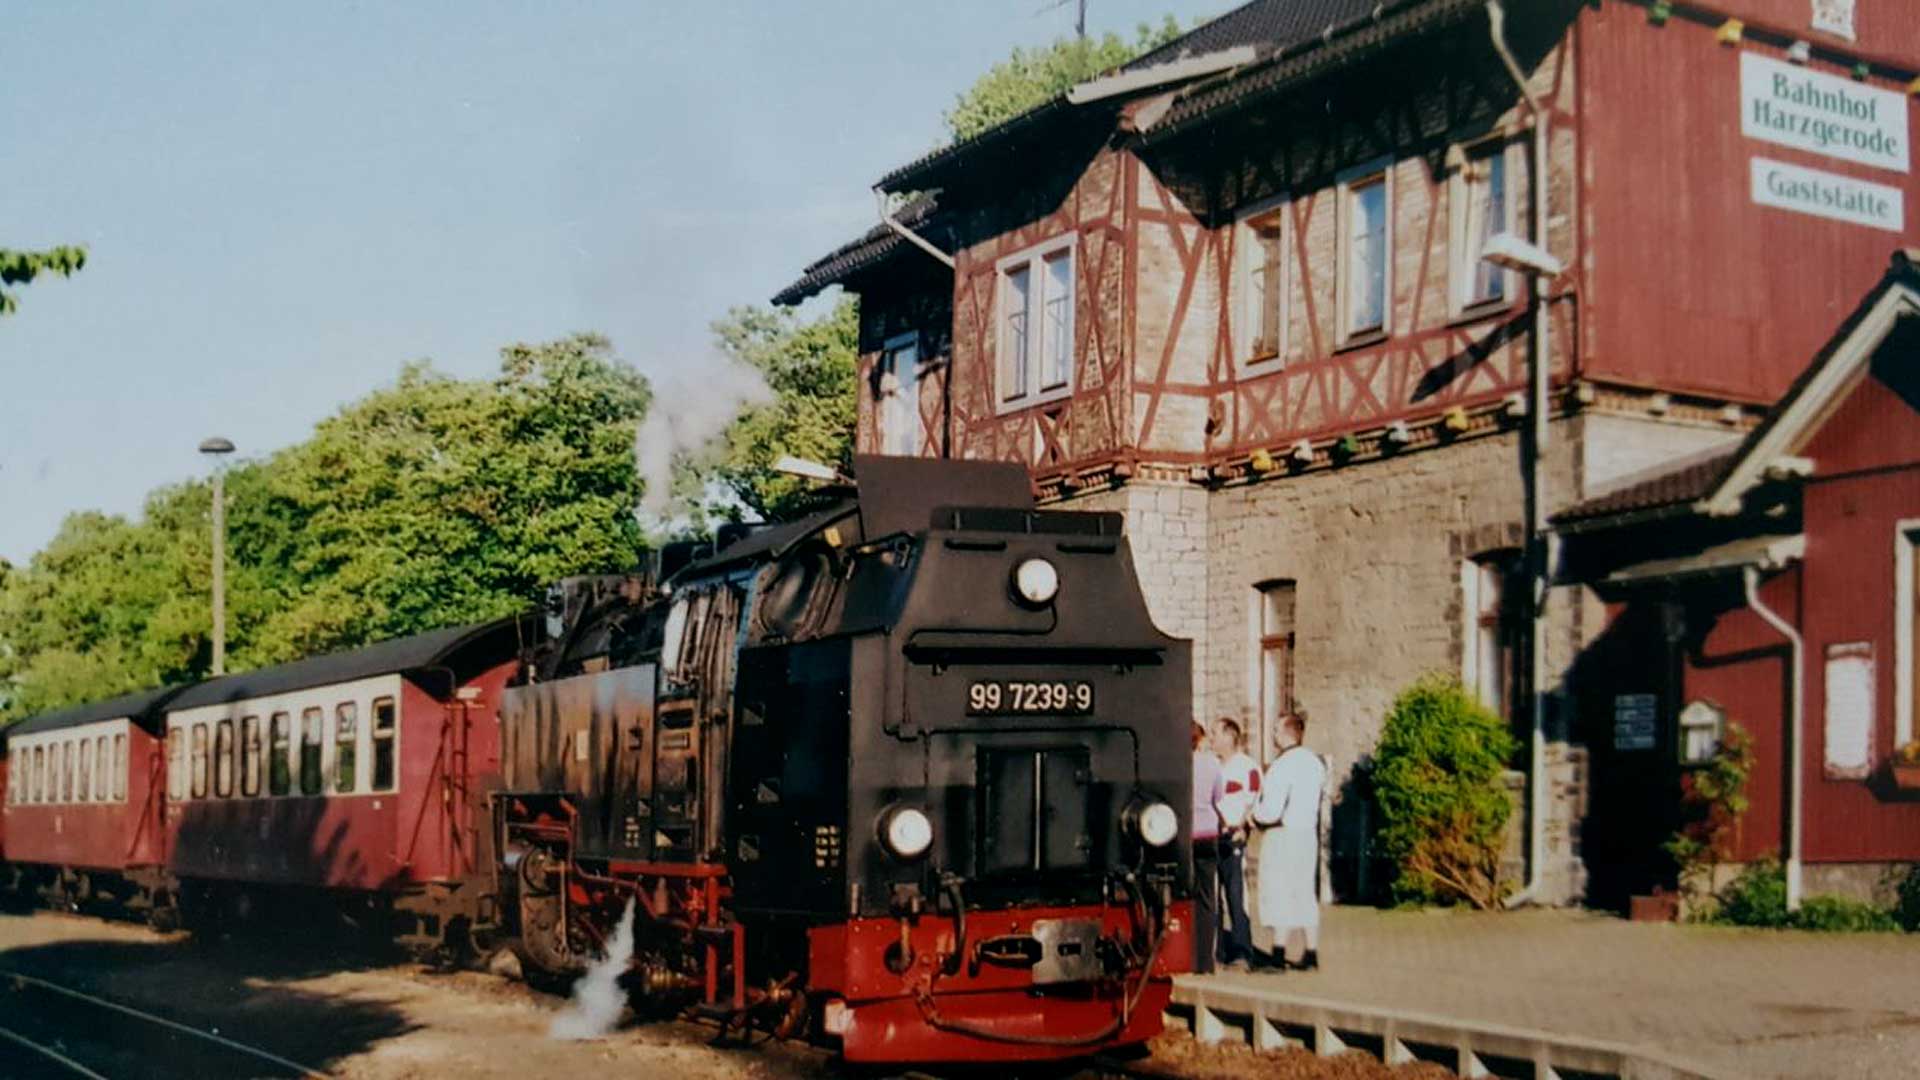 Ferienwohnung Zur Harzbahn in Harzgerode